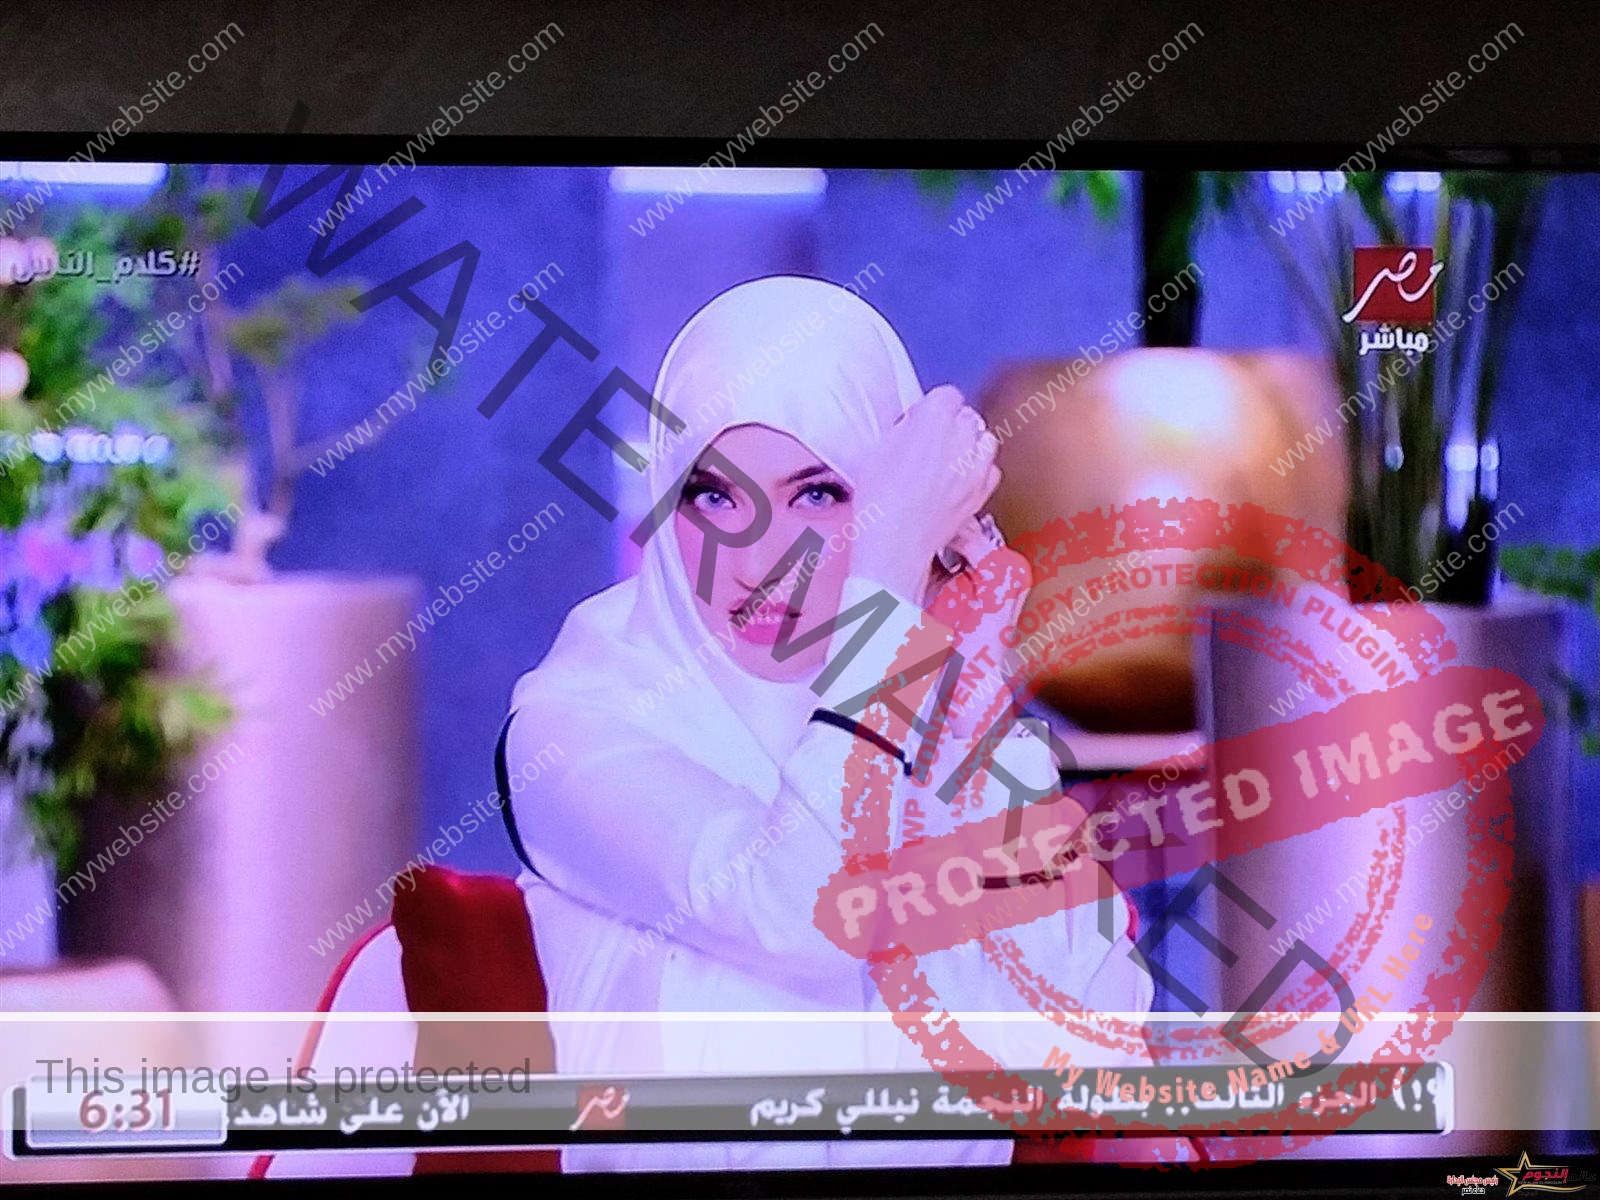 ياسمين عز تظهر بالحجاب على الهواء.. يارب يهدينا جميعًا